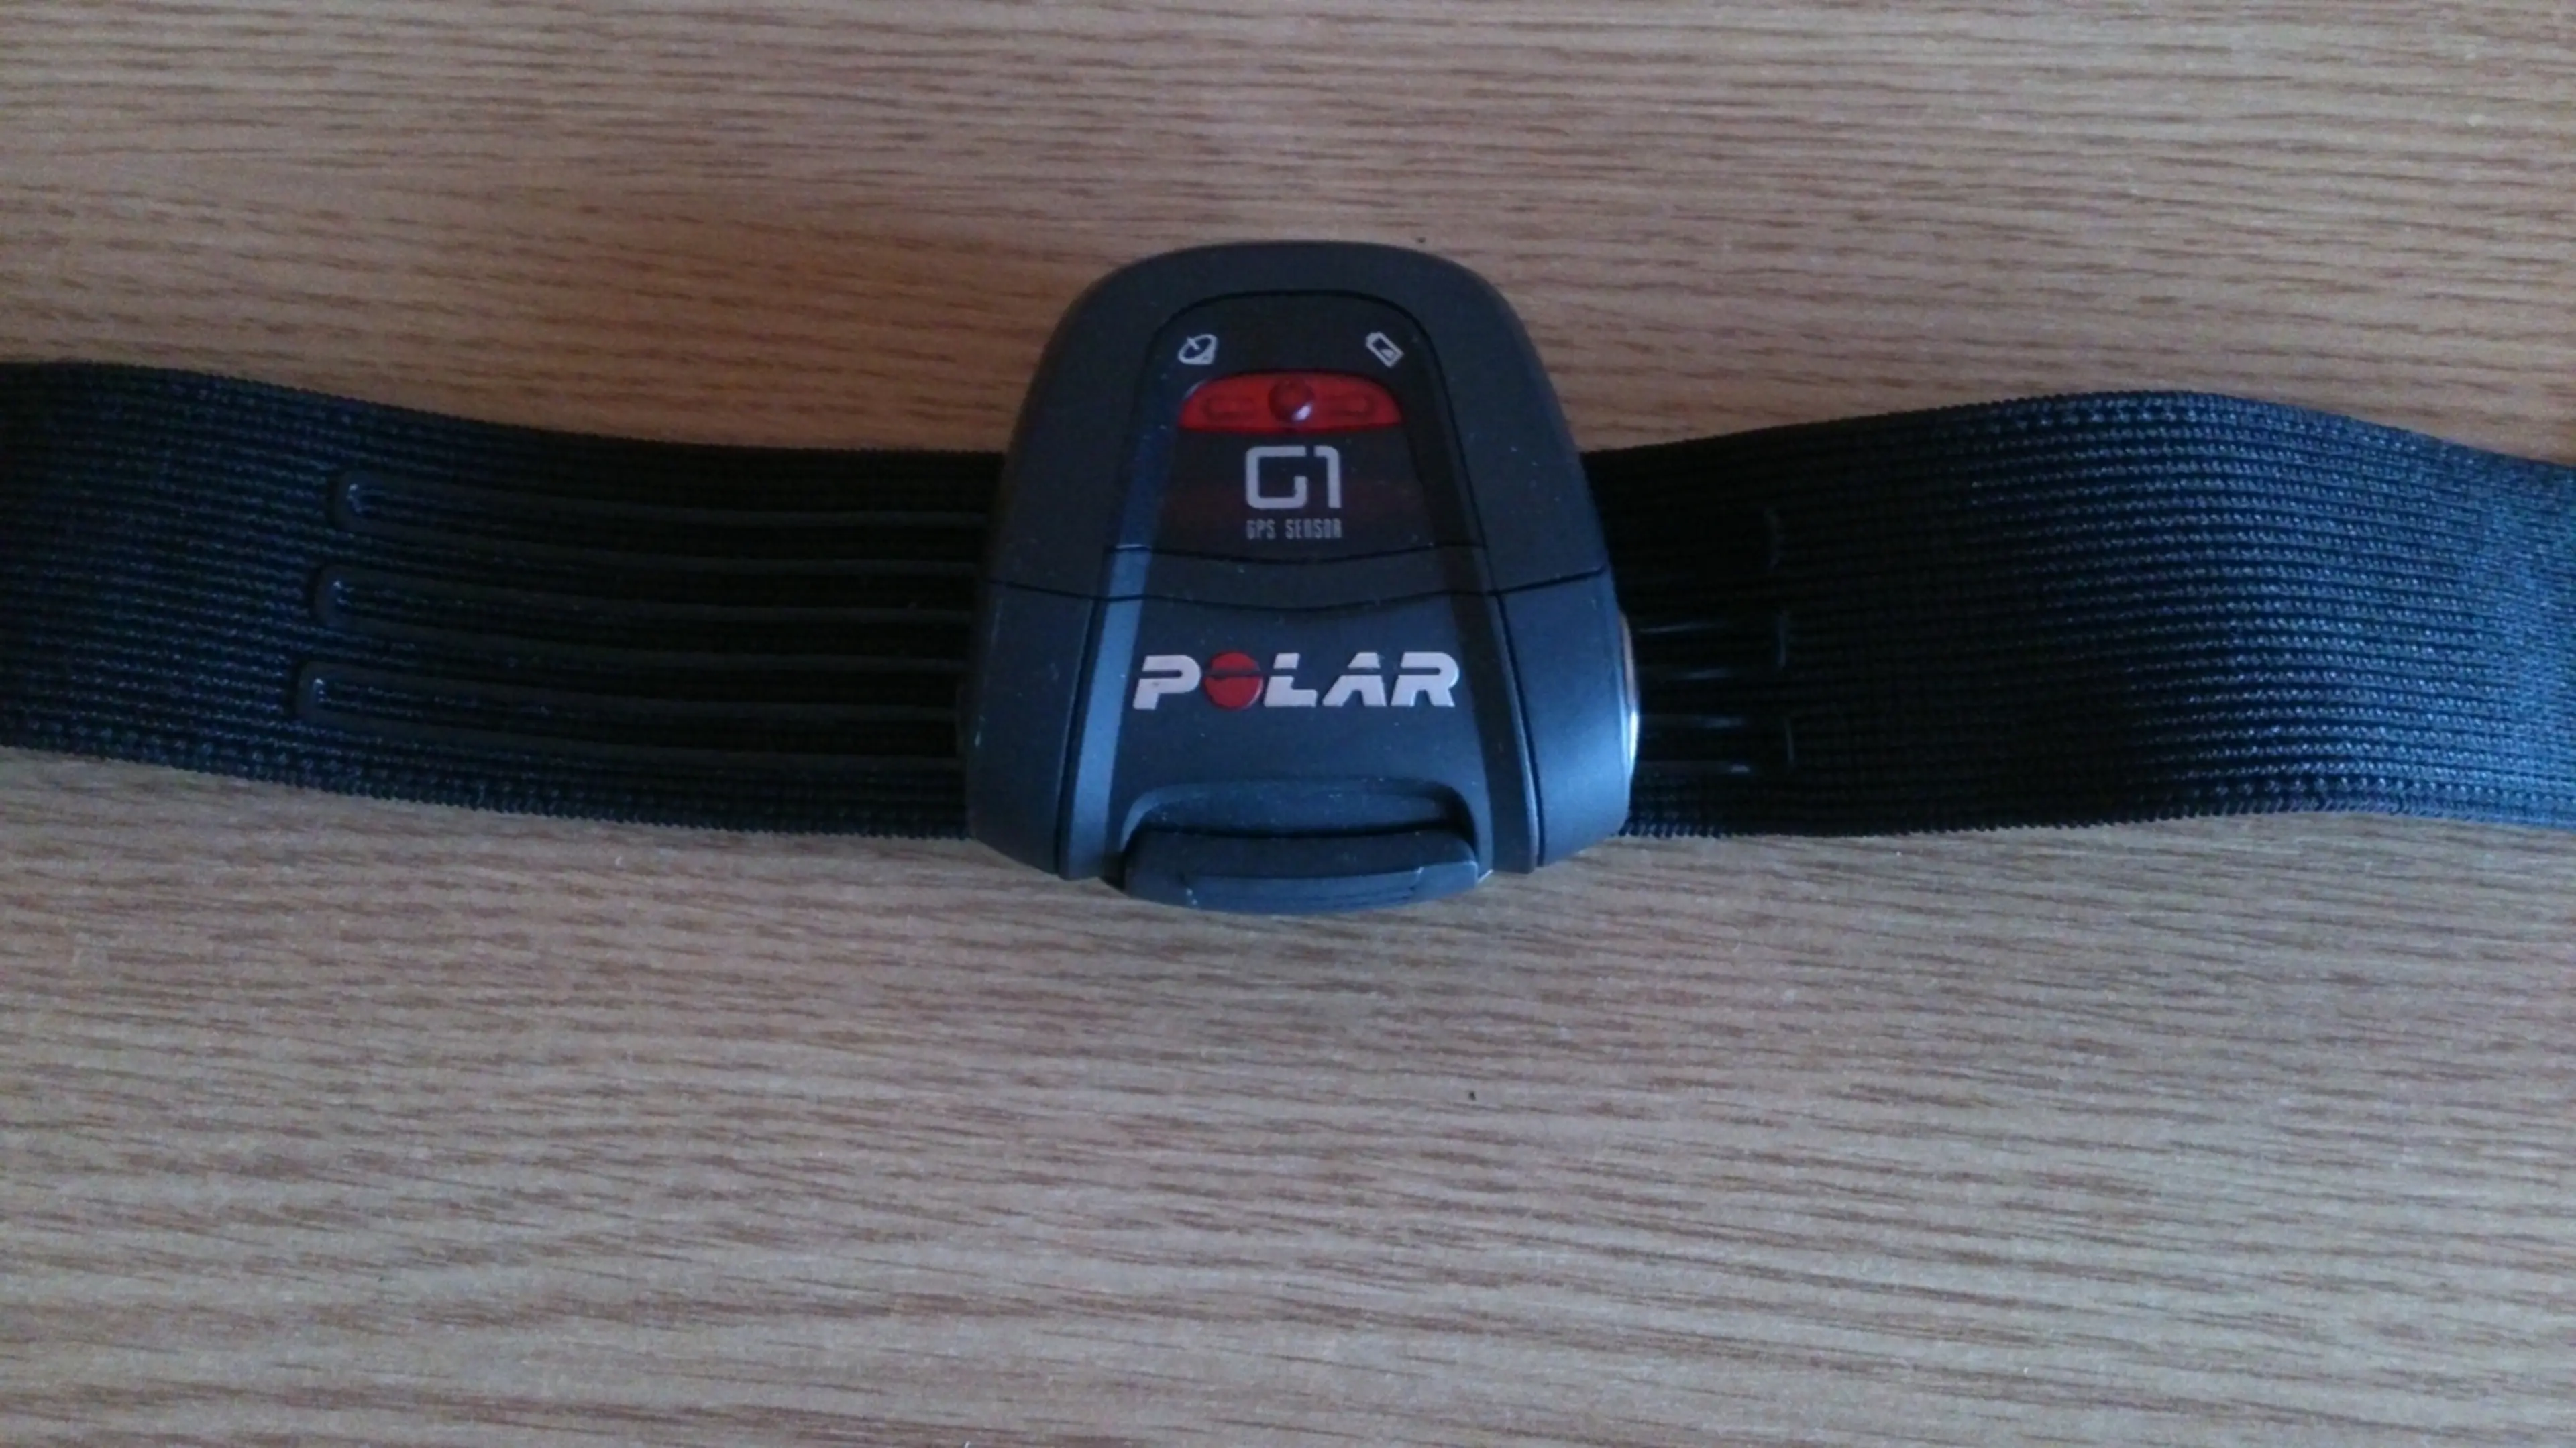 3. Senzor GPS Polar G1